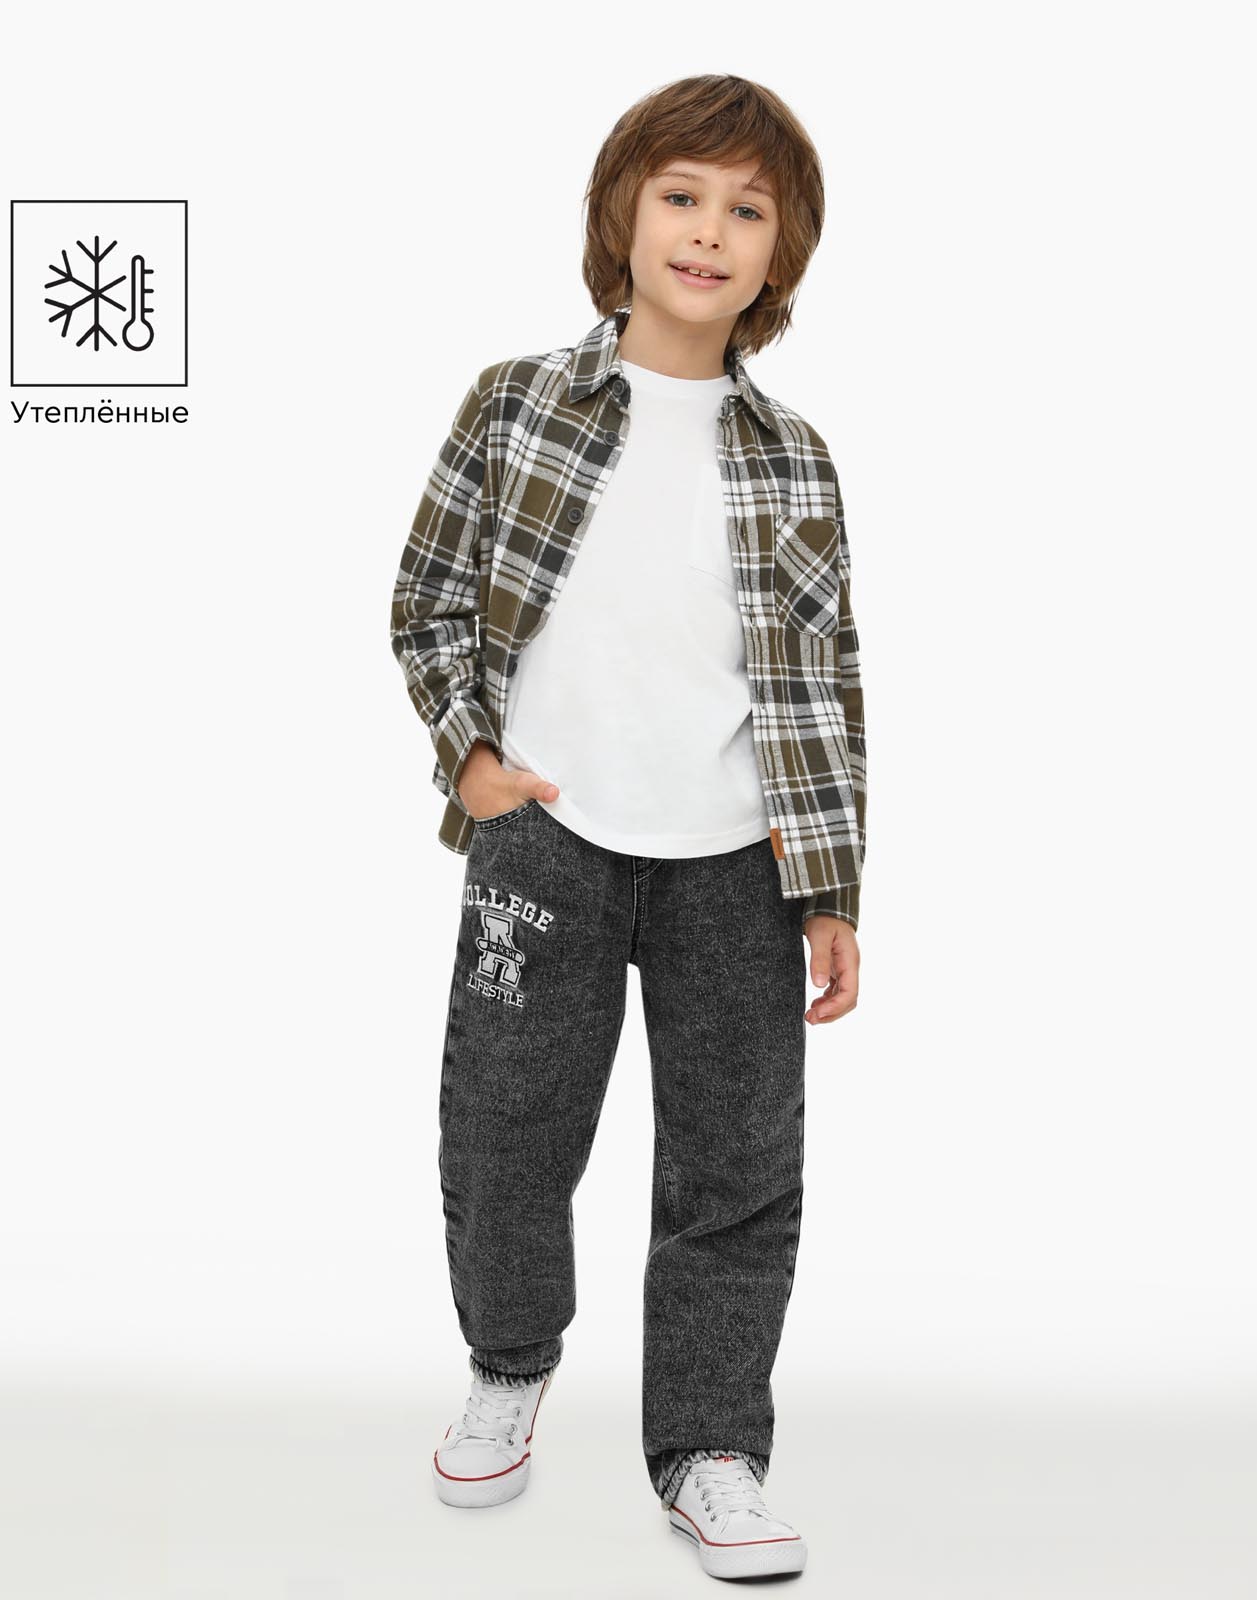 Утеплённые джинсы straight для мальчика Gloria Jeans BWB001743 серый/айс 3-4г/104